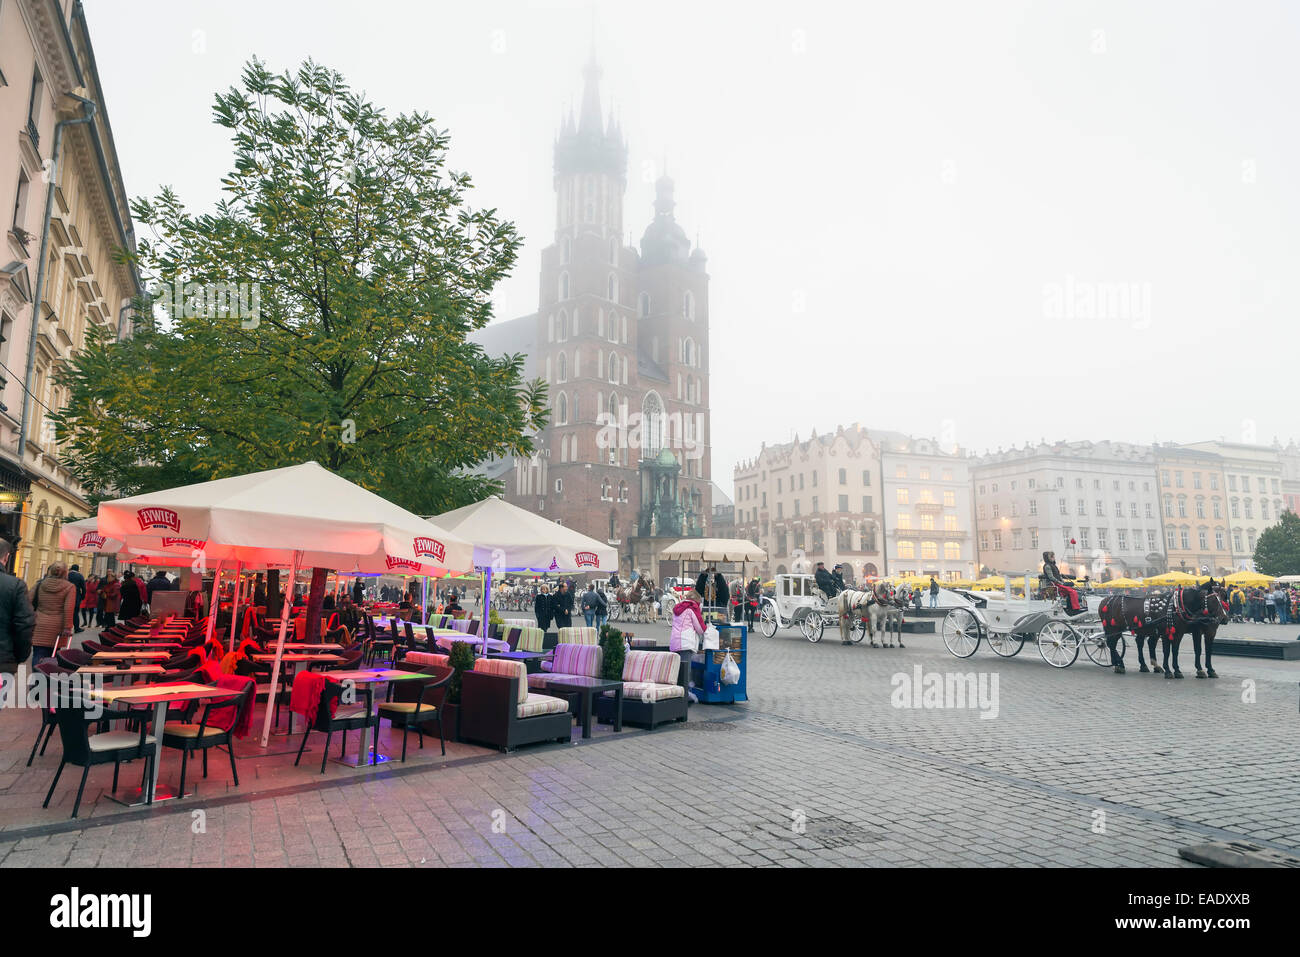 Cracovia in Polonia - 26 ottobre 2014: carrozza su Cracovia la piazza principale del mercato. In fondo è una città storica chiamata hall Foto Stock